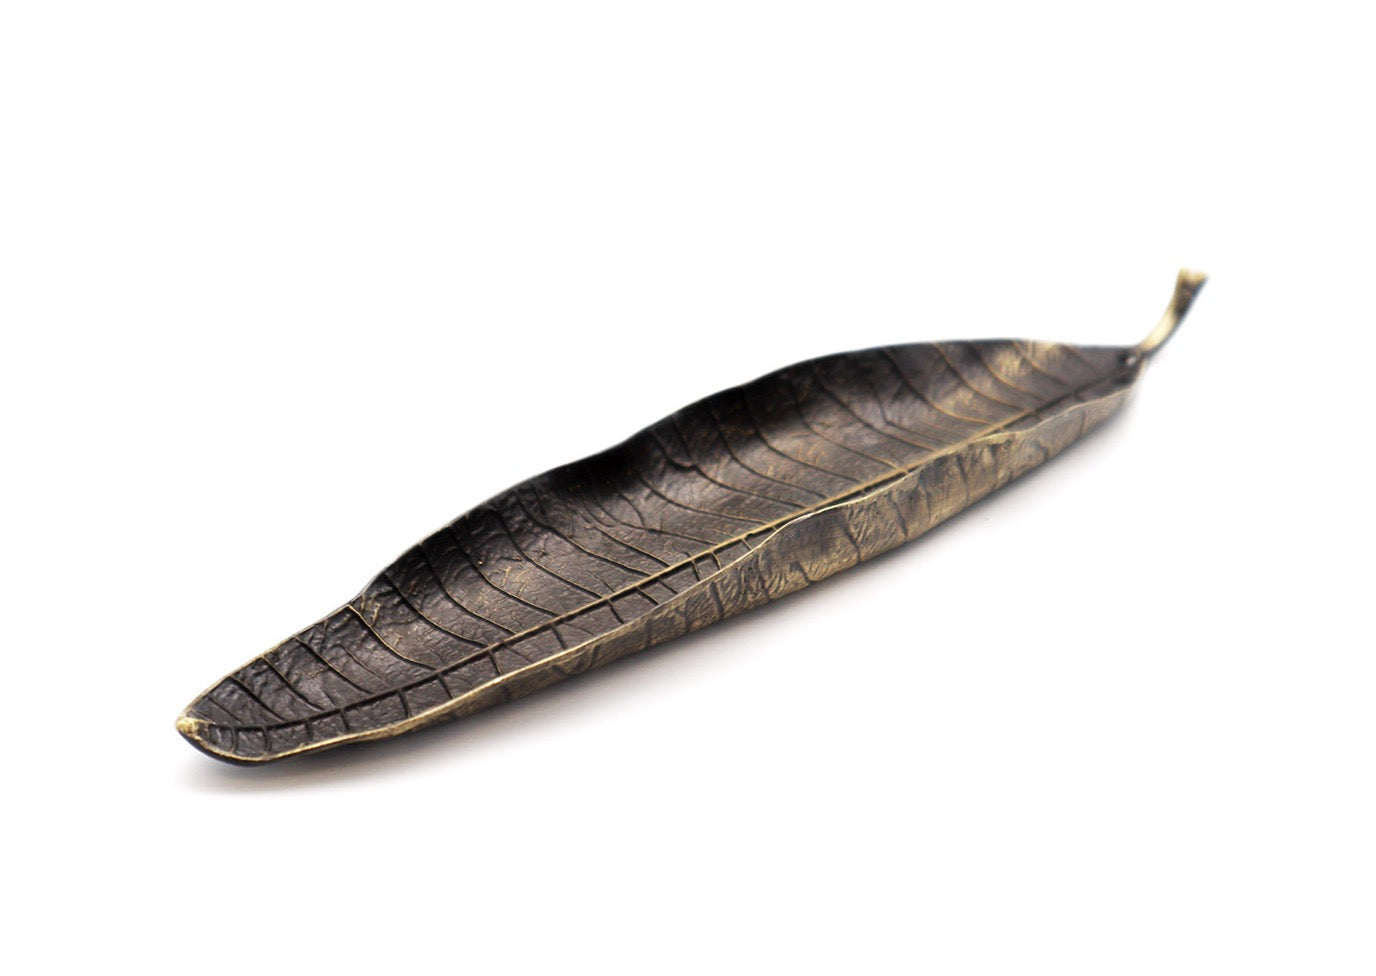 Bodhi leaf incense stick holder